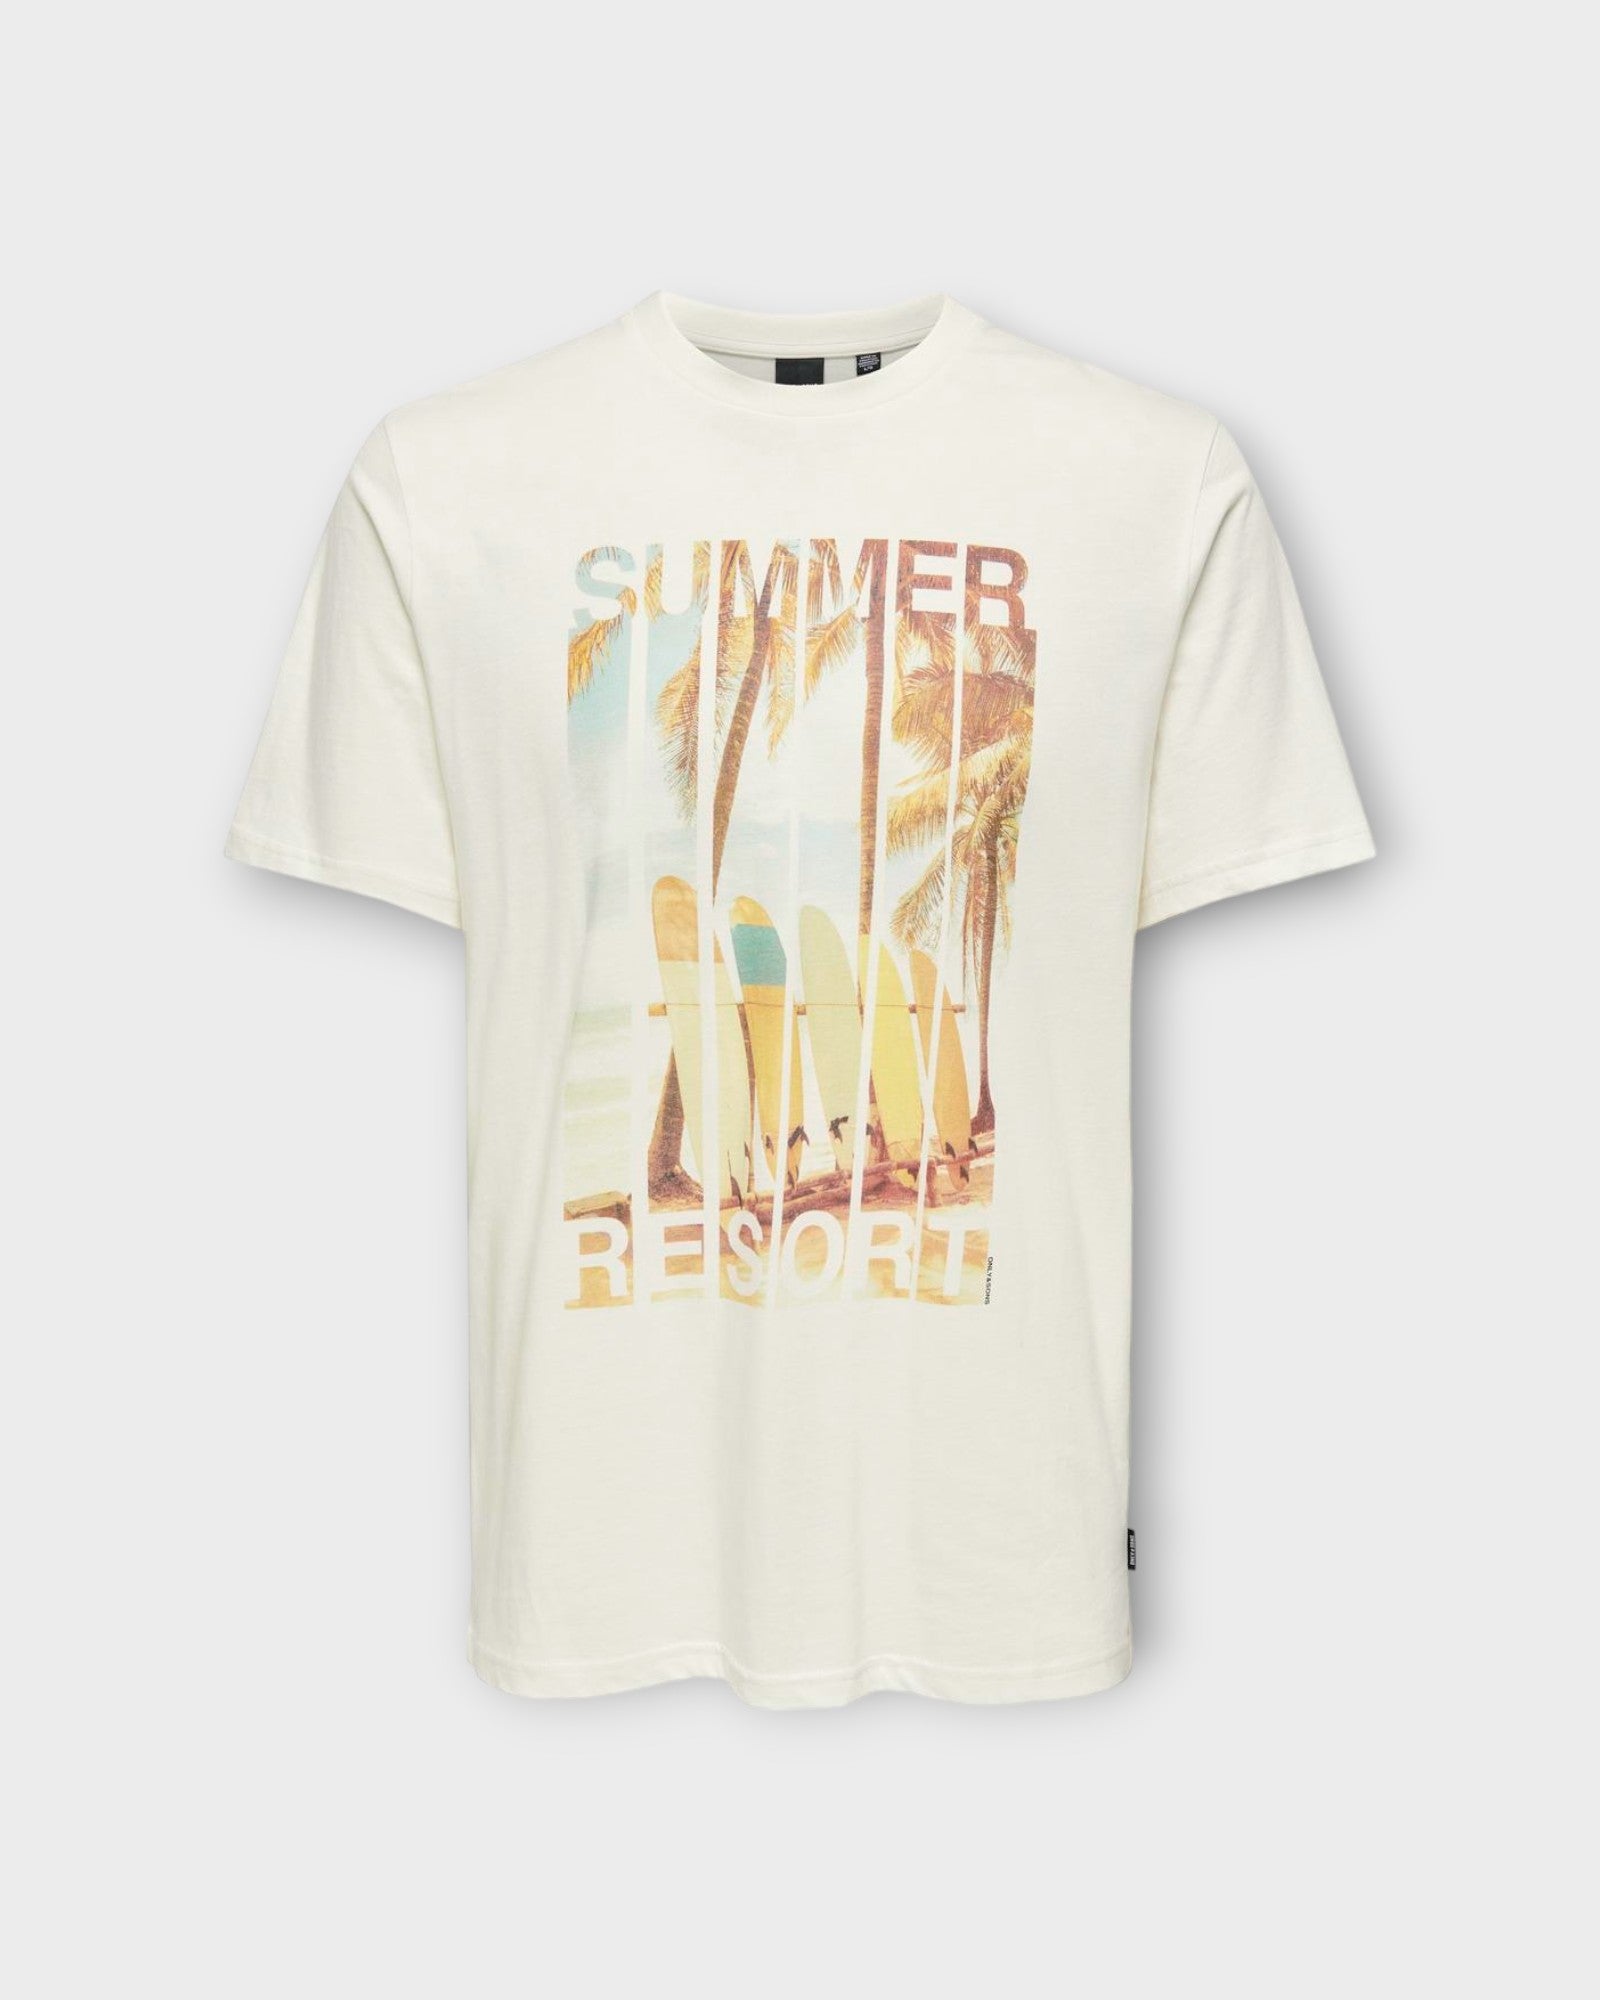 Magdy Life Photoprint SS Tee Cloud Dancer Summer fra Only and Sons. Rå hvid printet T-shirt til mænd. Her set i summer udgaven forfra.